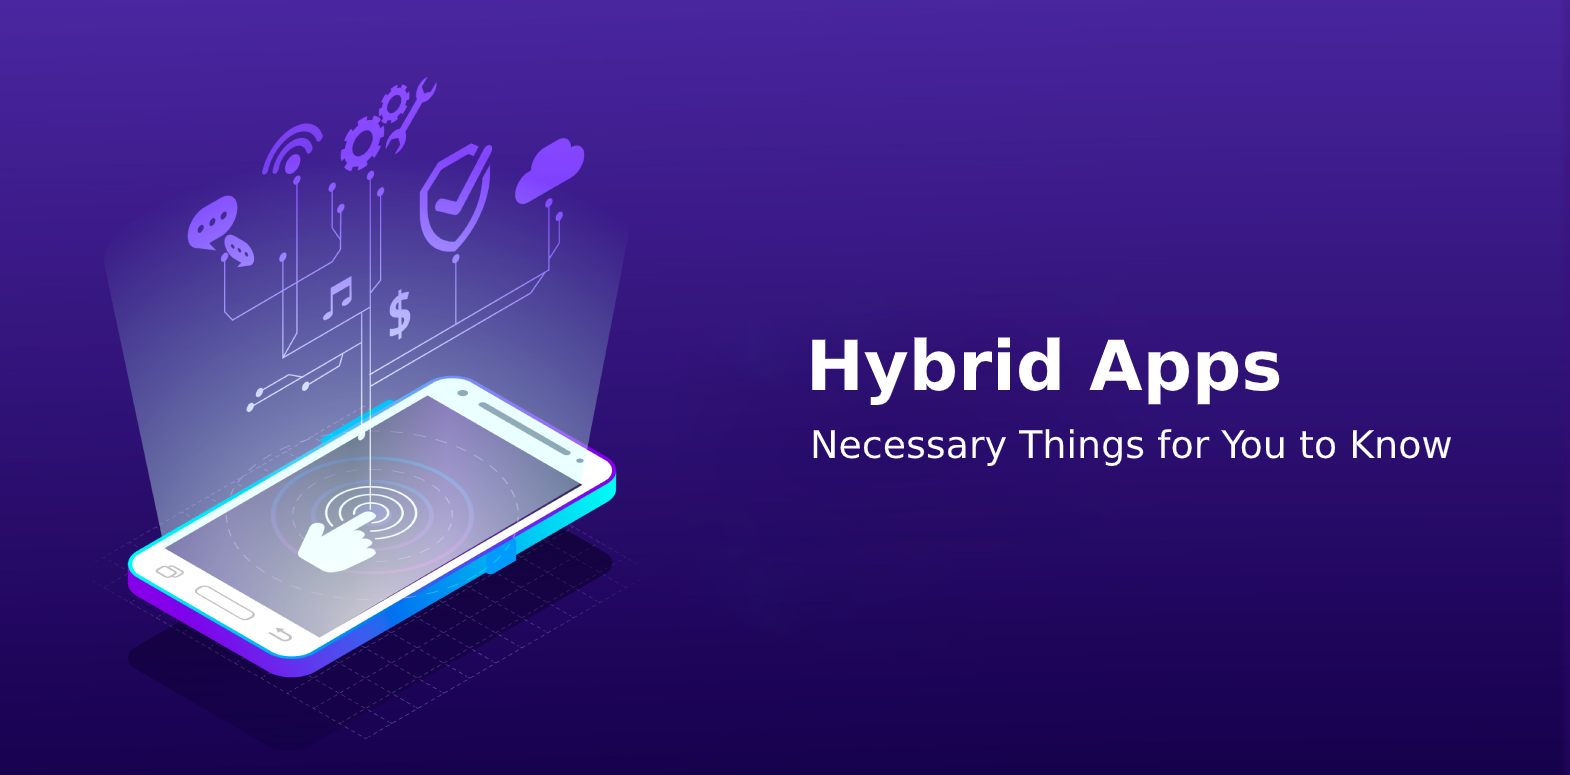 2do app hybrid